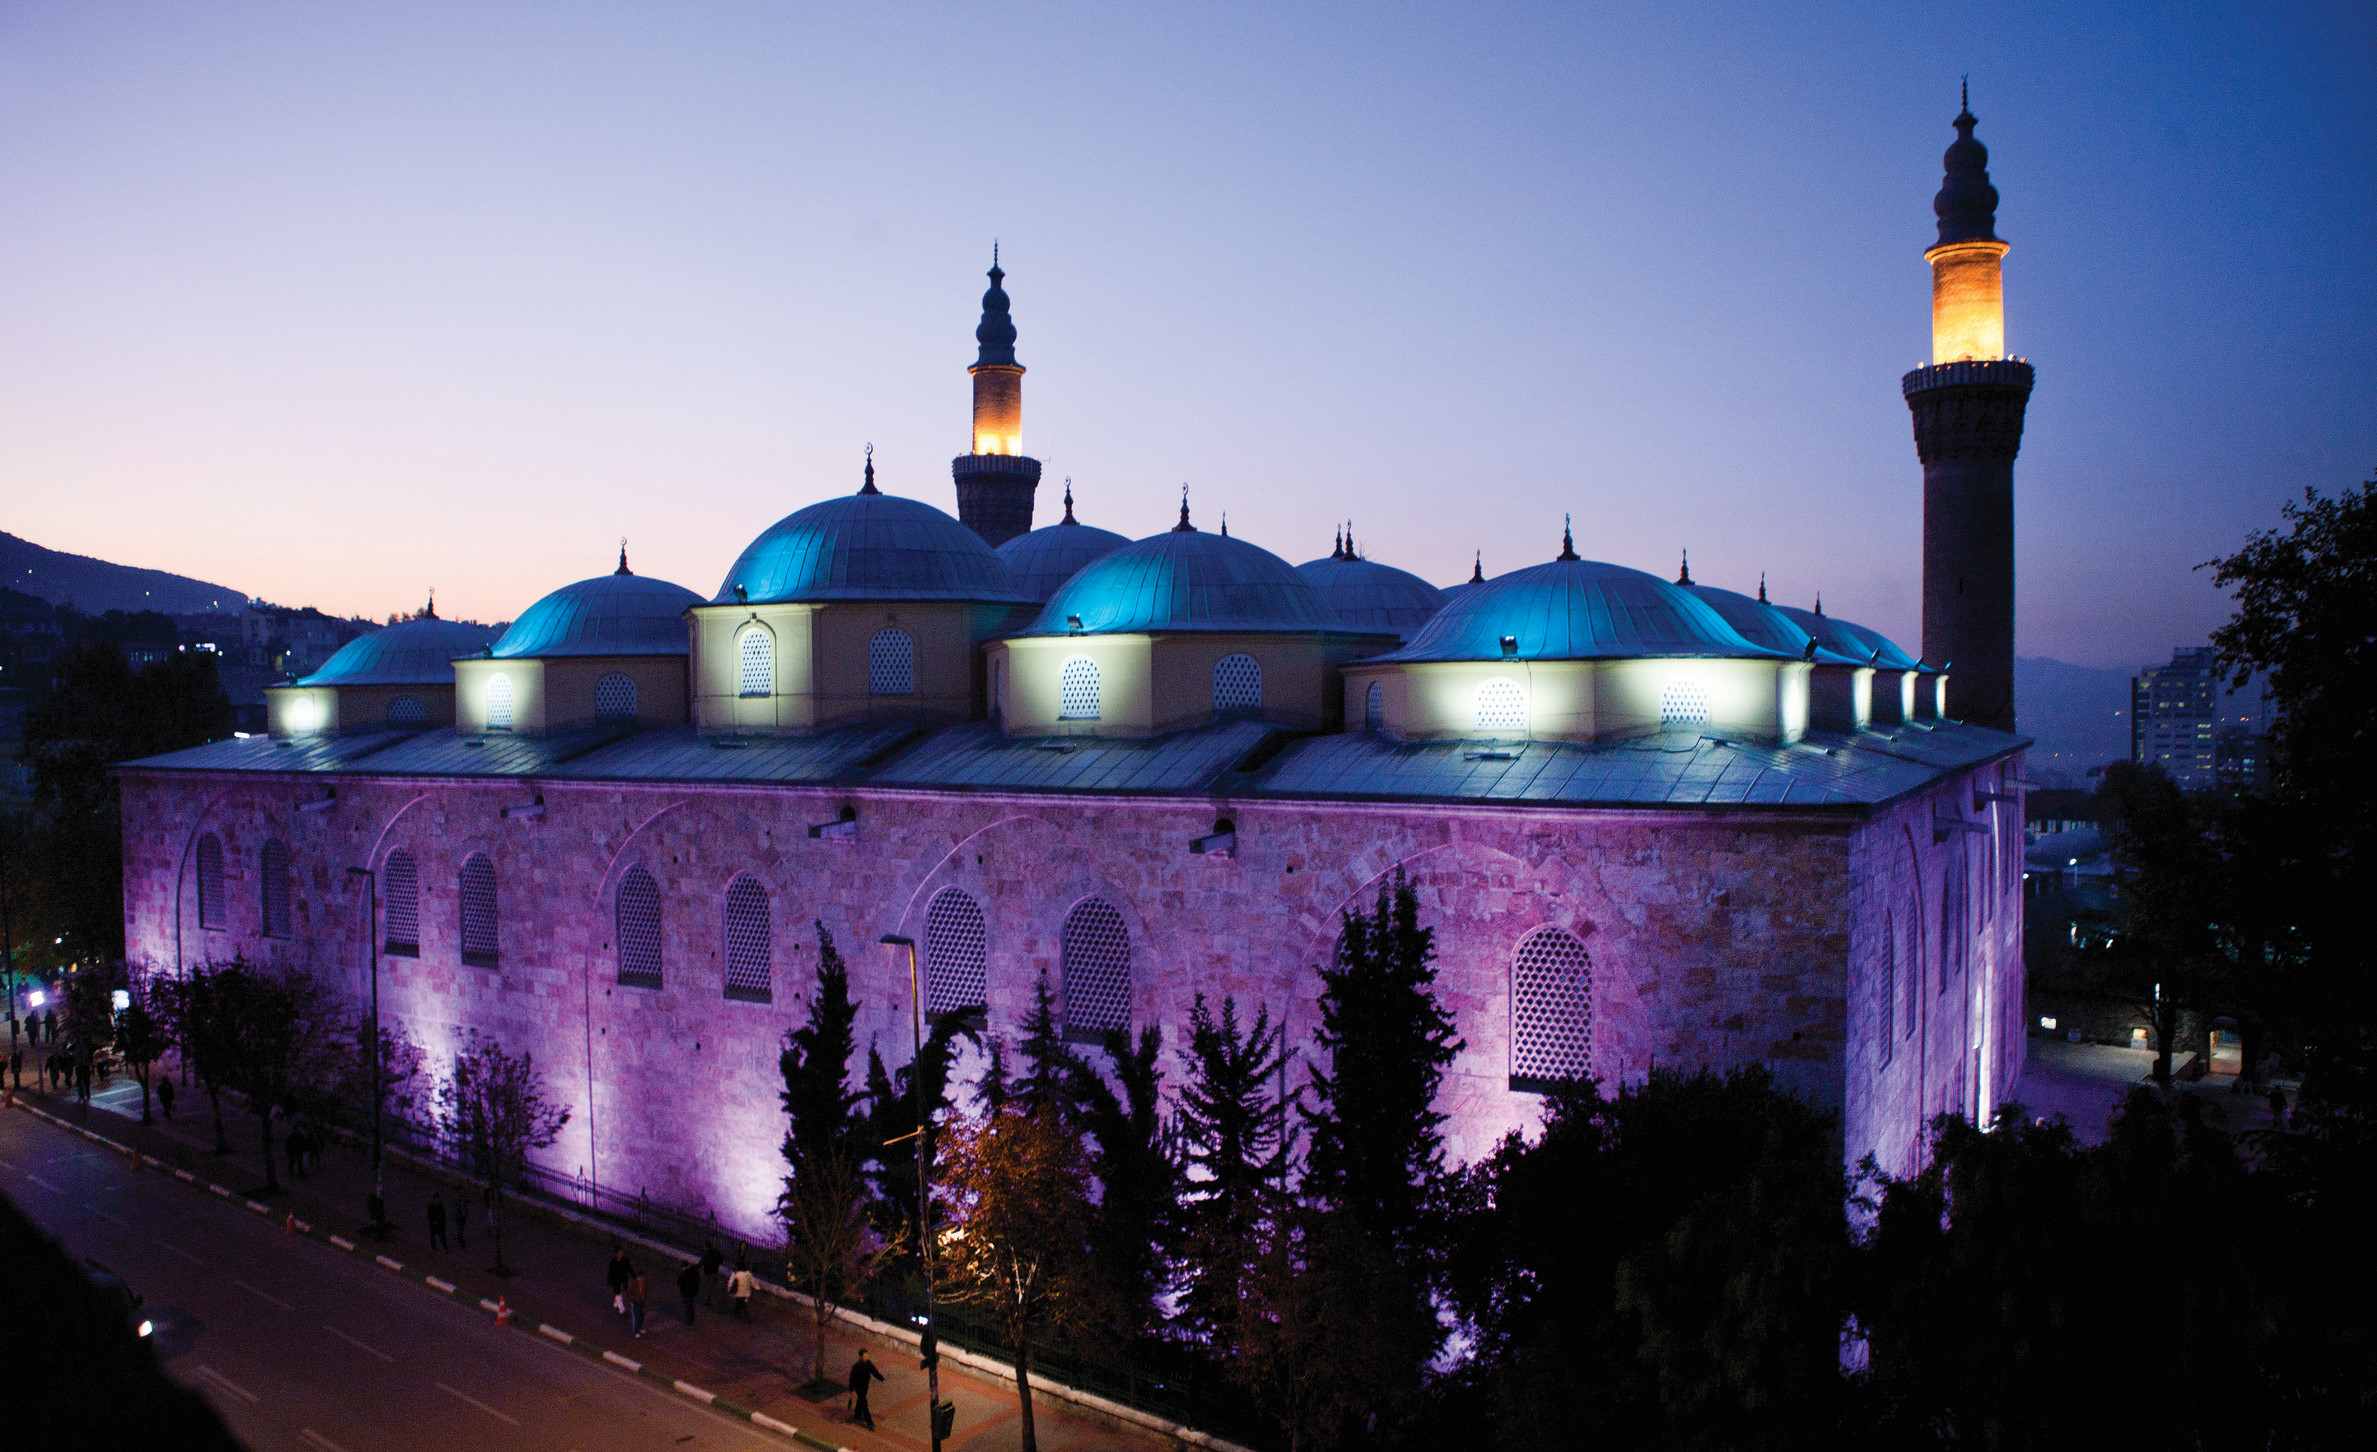 » Osmanlı'nın kalbi Yıldırım Bayezid döneminde inşa edilen Bursa Ulucami, Mekke, Medine, Kudüs ve Şam'dan sonra İslamın beşinci kutsal mabedi olarak kabul ediliyor. 